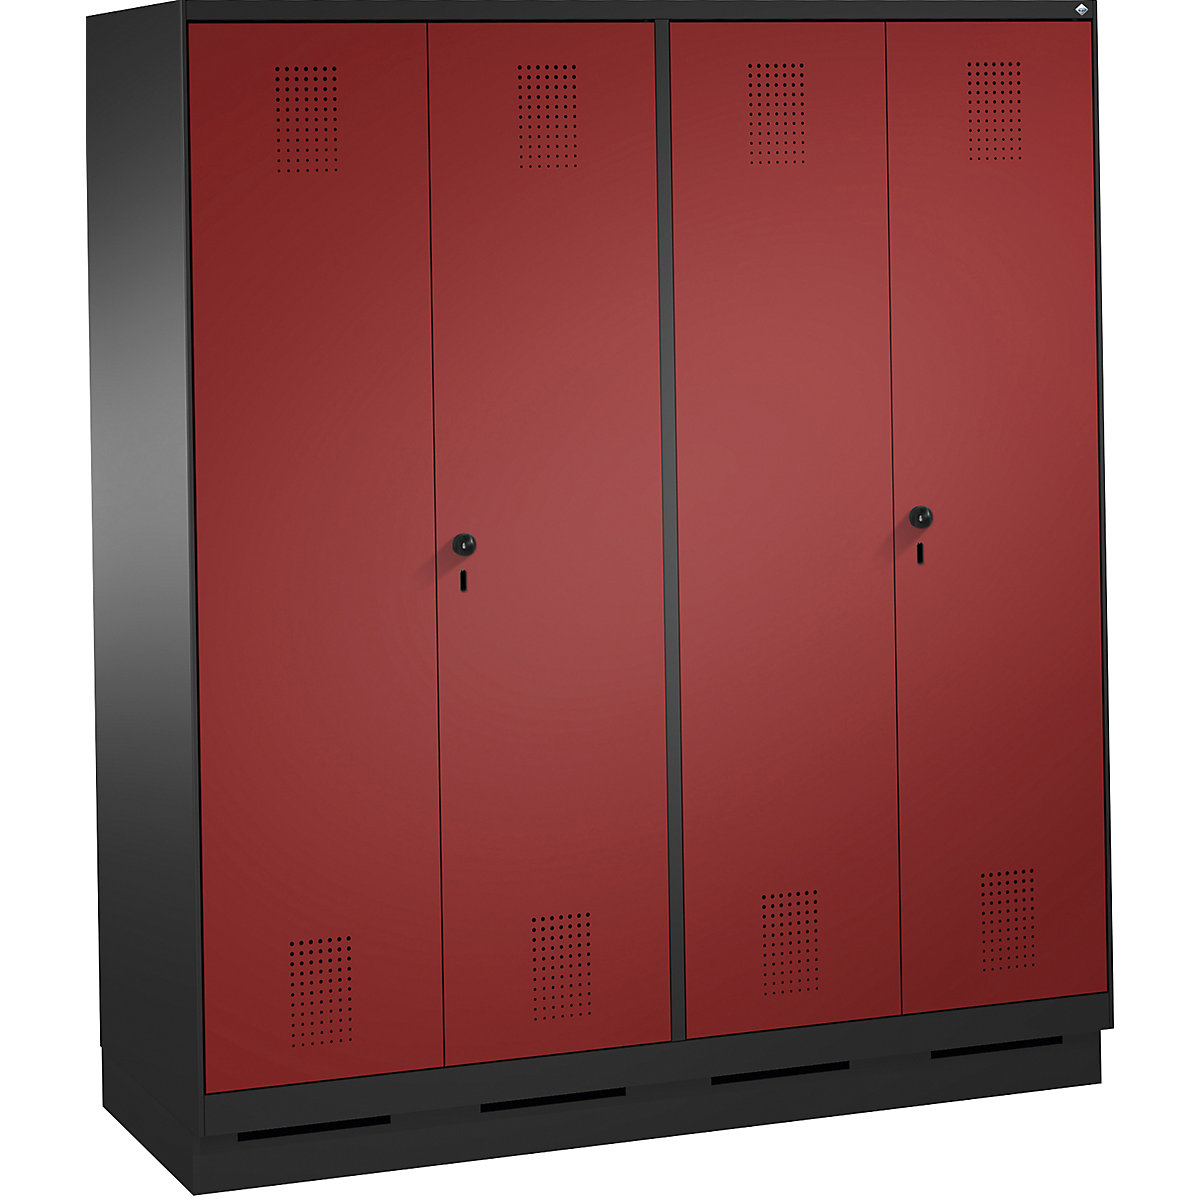 Szafa szatniowa EVOLO, drzwi zamykane do siebie – C+P, 4 przedziały, szer. przedziału 400 mm, z cokołem, czarno-szara / rubinowo-czerwona-6